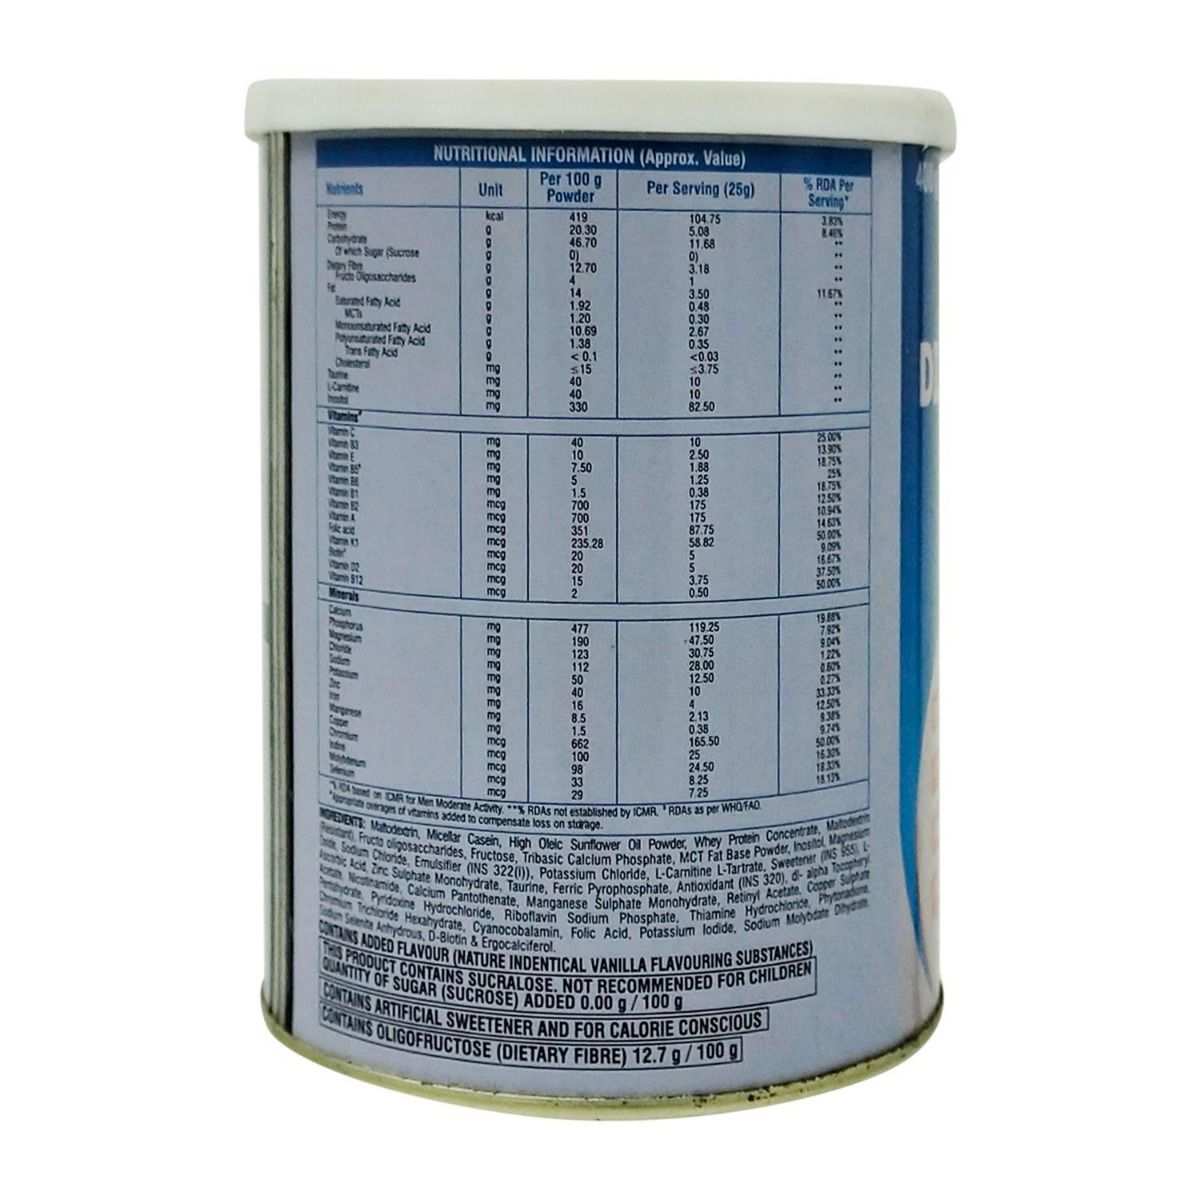 Apollo Pharmacy Diabetic Protein Powder, 400 gm, Pack of 1 